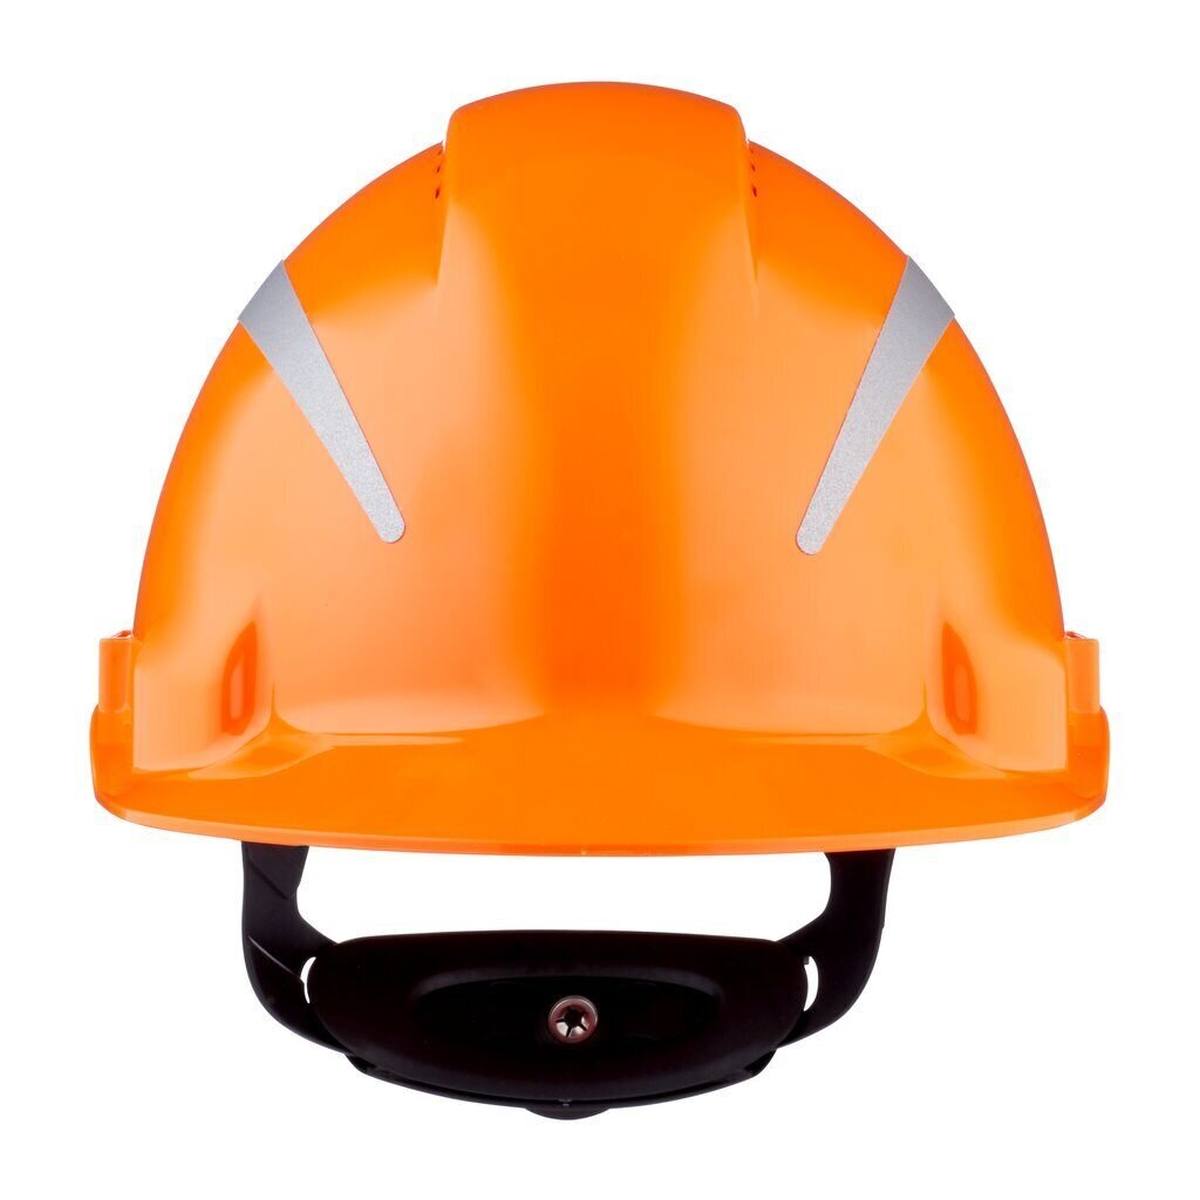 elmetto di sicurezza 3M G3000 con indicatore UV, arancione, ABS, chiusura a cricchetto ventilata, fascia antisudore in plastica, adesivo riflettente